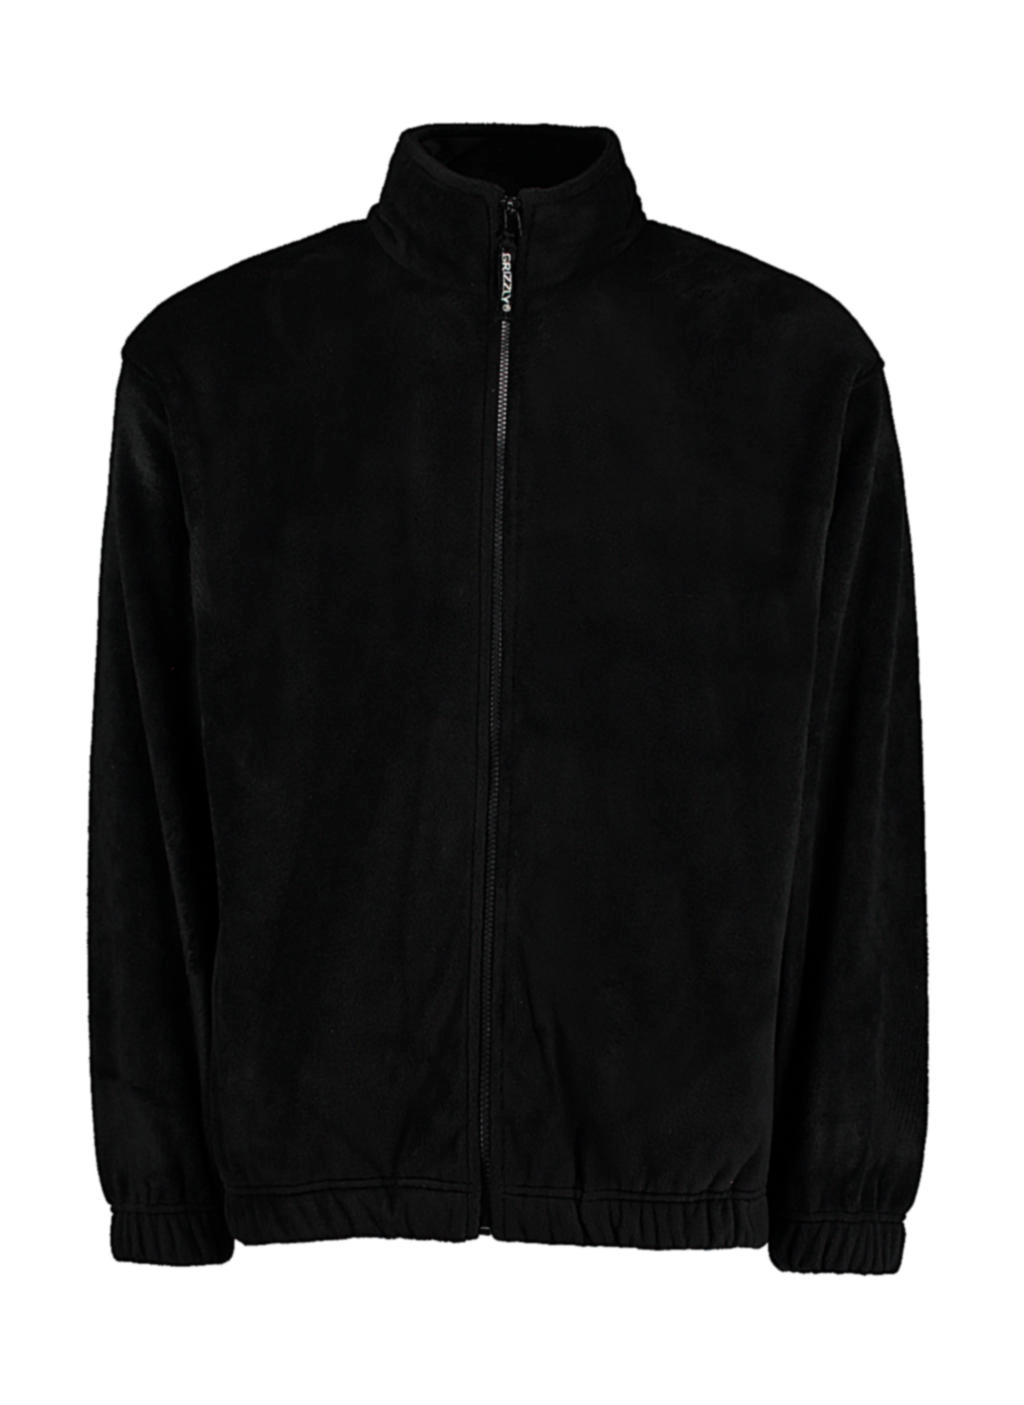 Classic Fit Full Zip Fleece zum Besticken und Bedrucken in der Farbe Black mit Ihren Logo, Schriftzug oder Motiv.